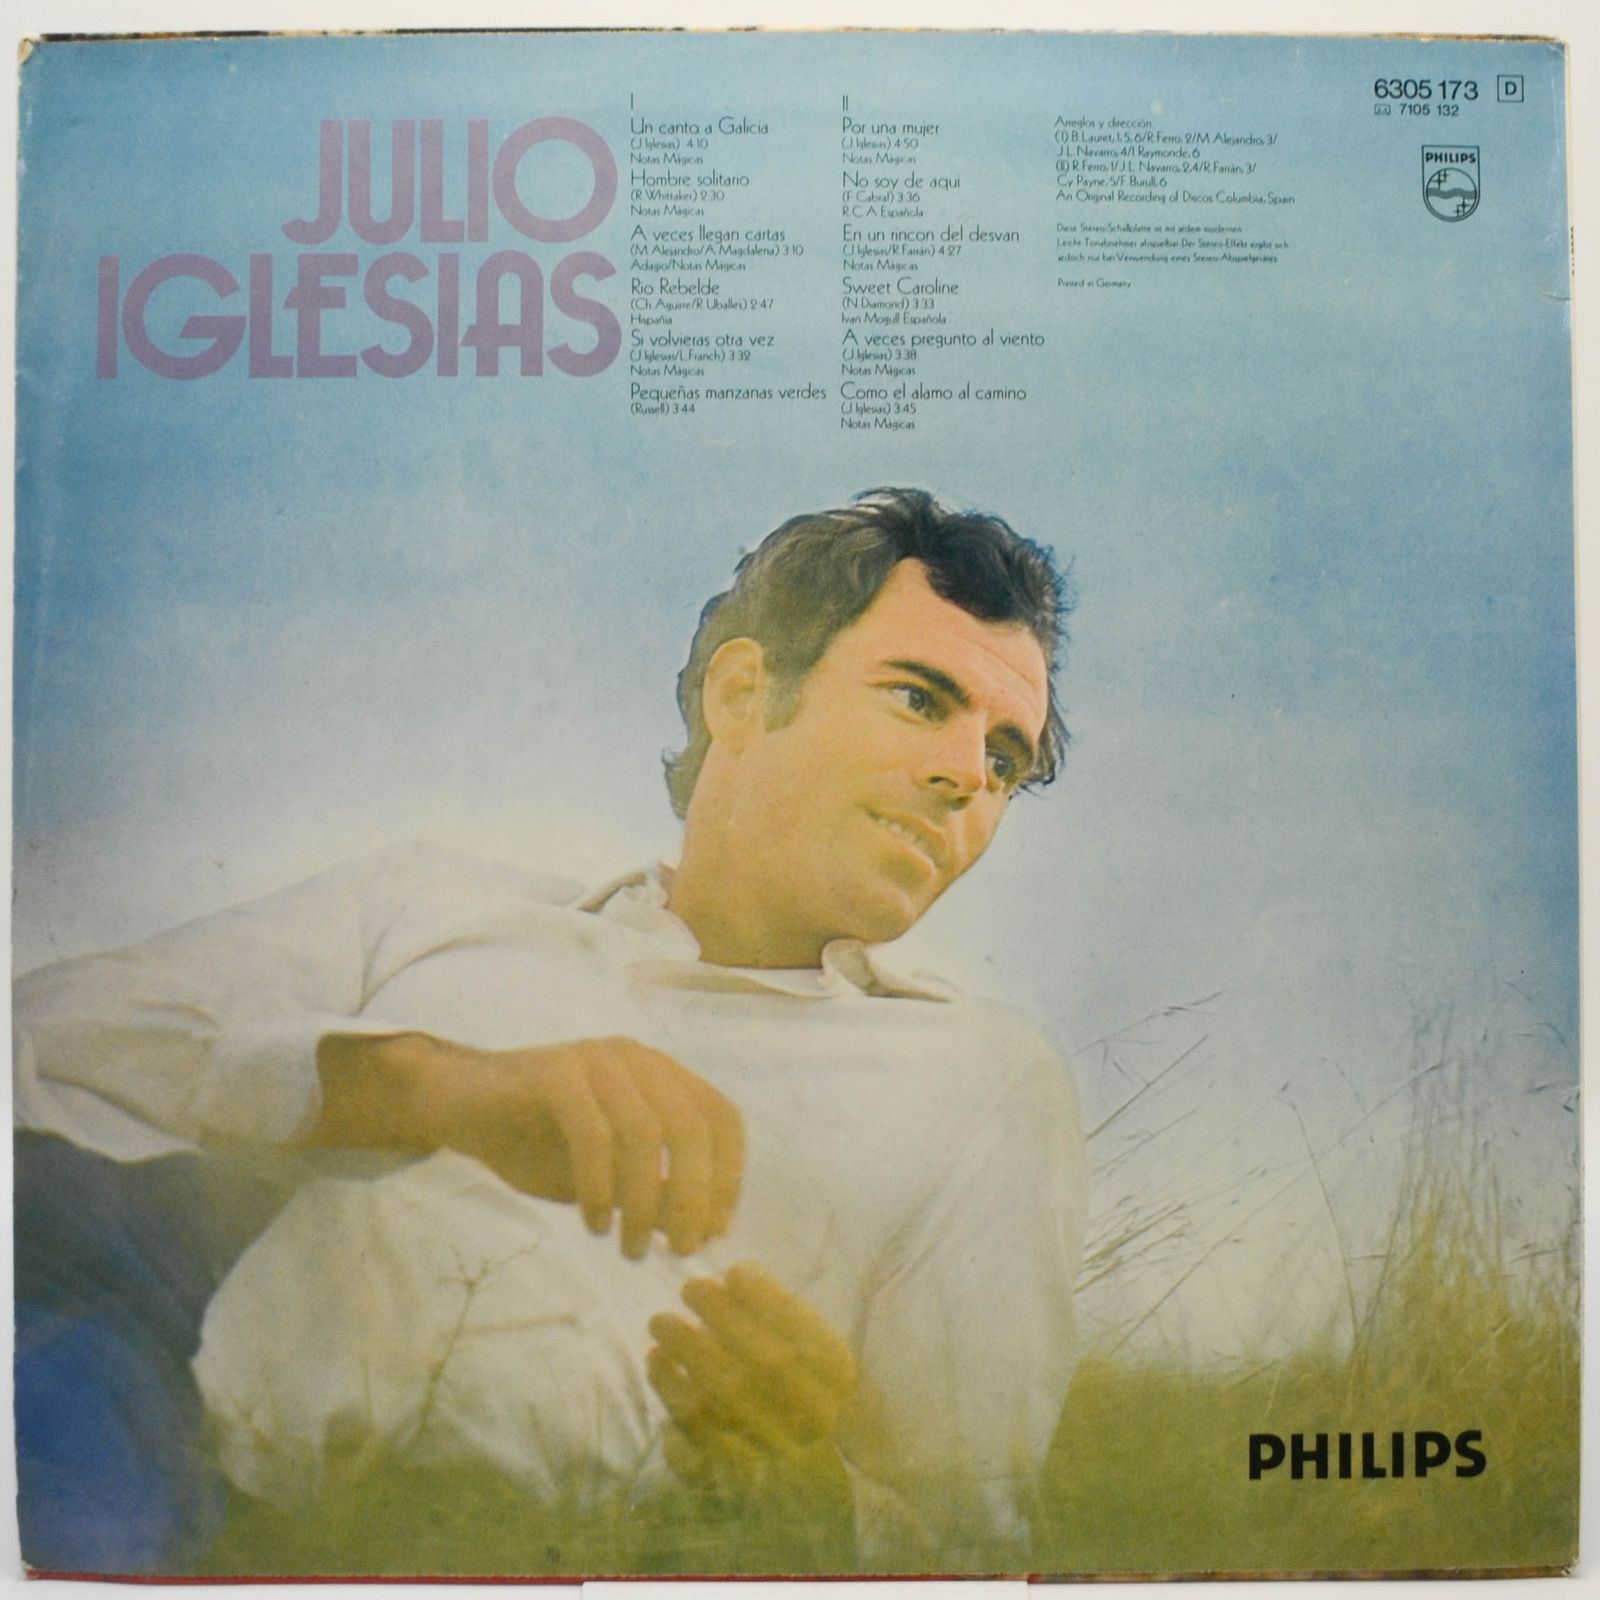 Julio Iglesias — Un Canto A Galicia, 1972